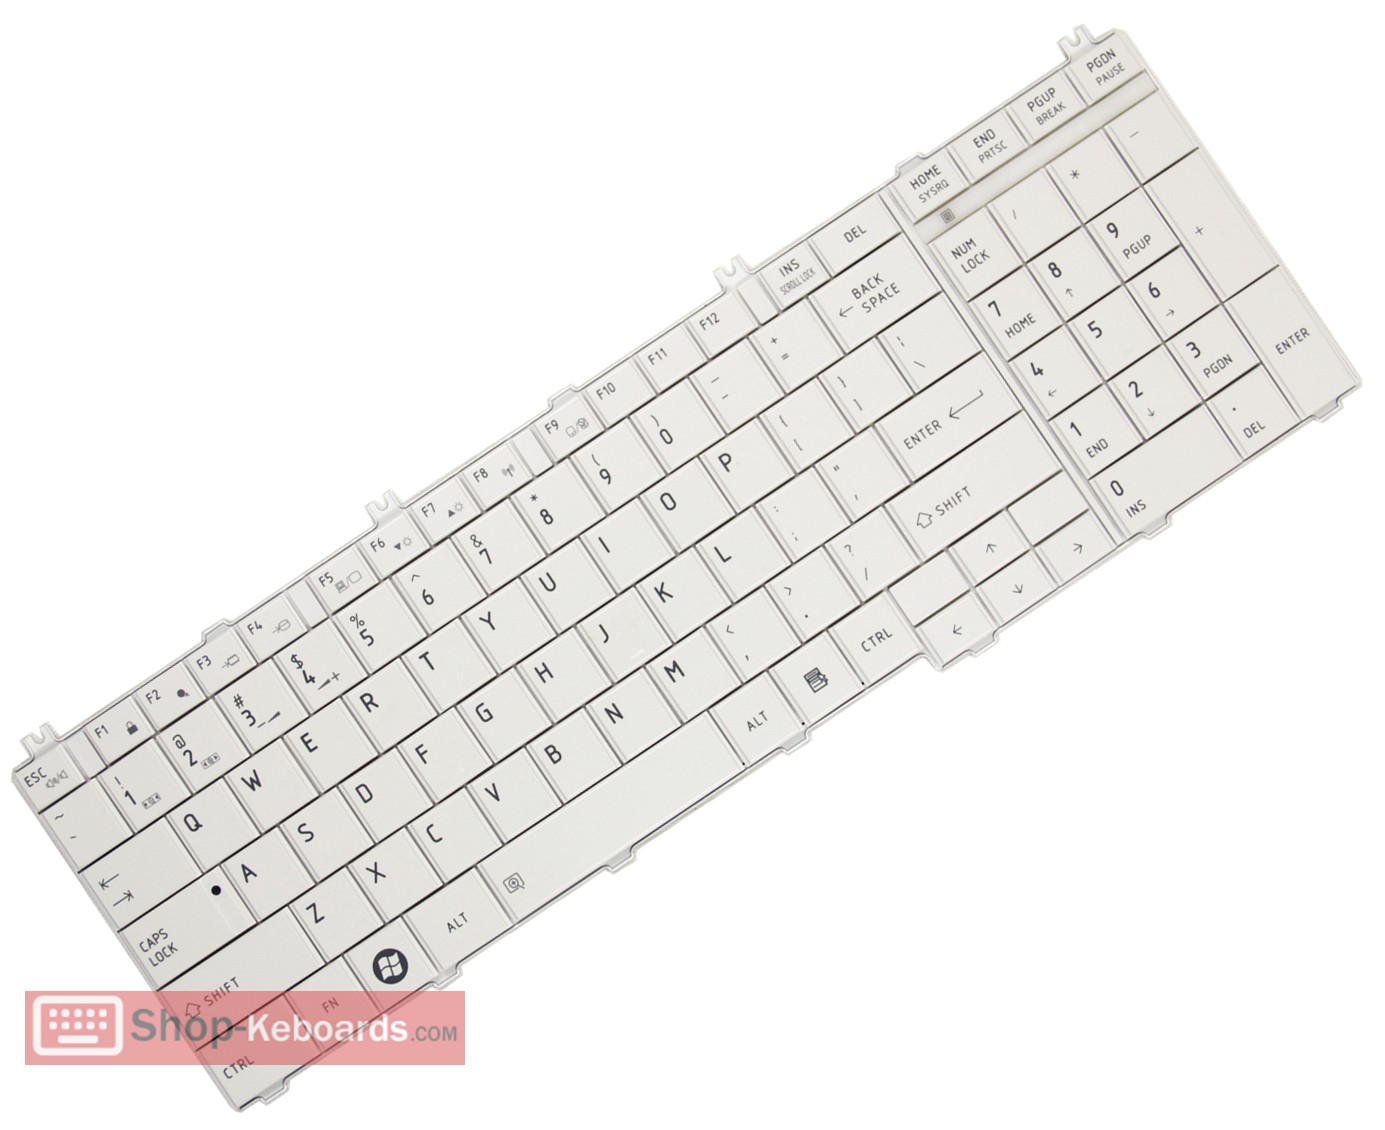 Toshiba Satellite C665/040  Keyboard replacement